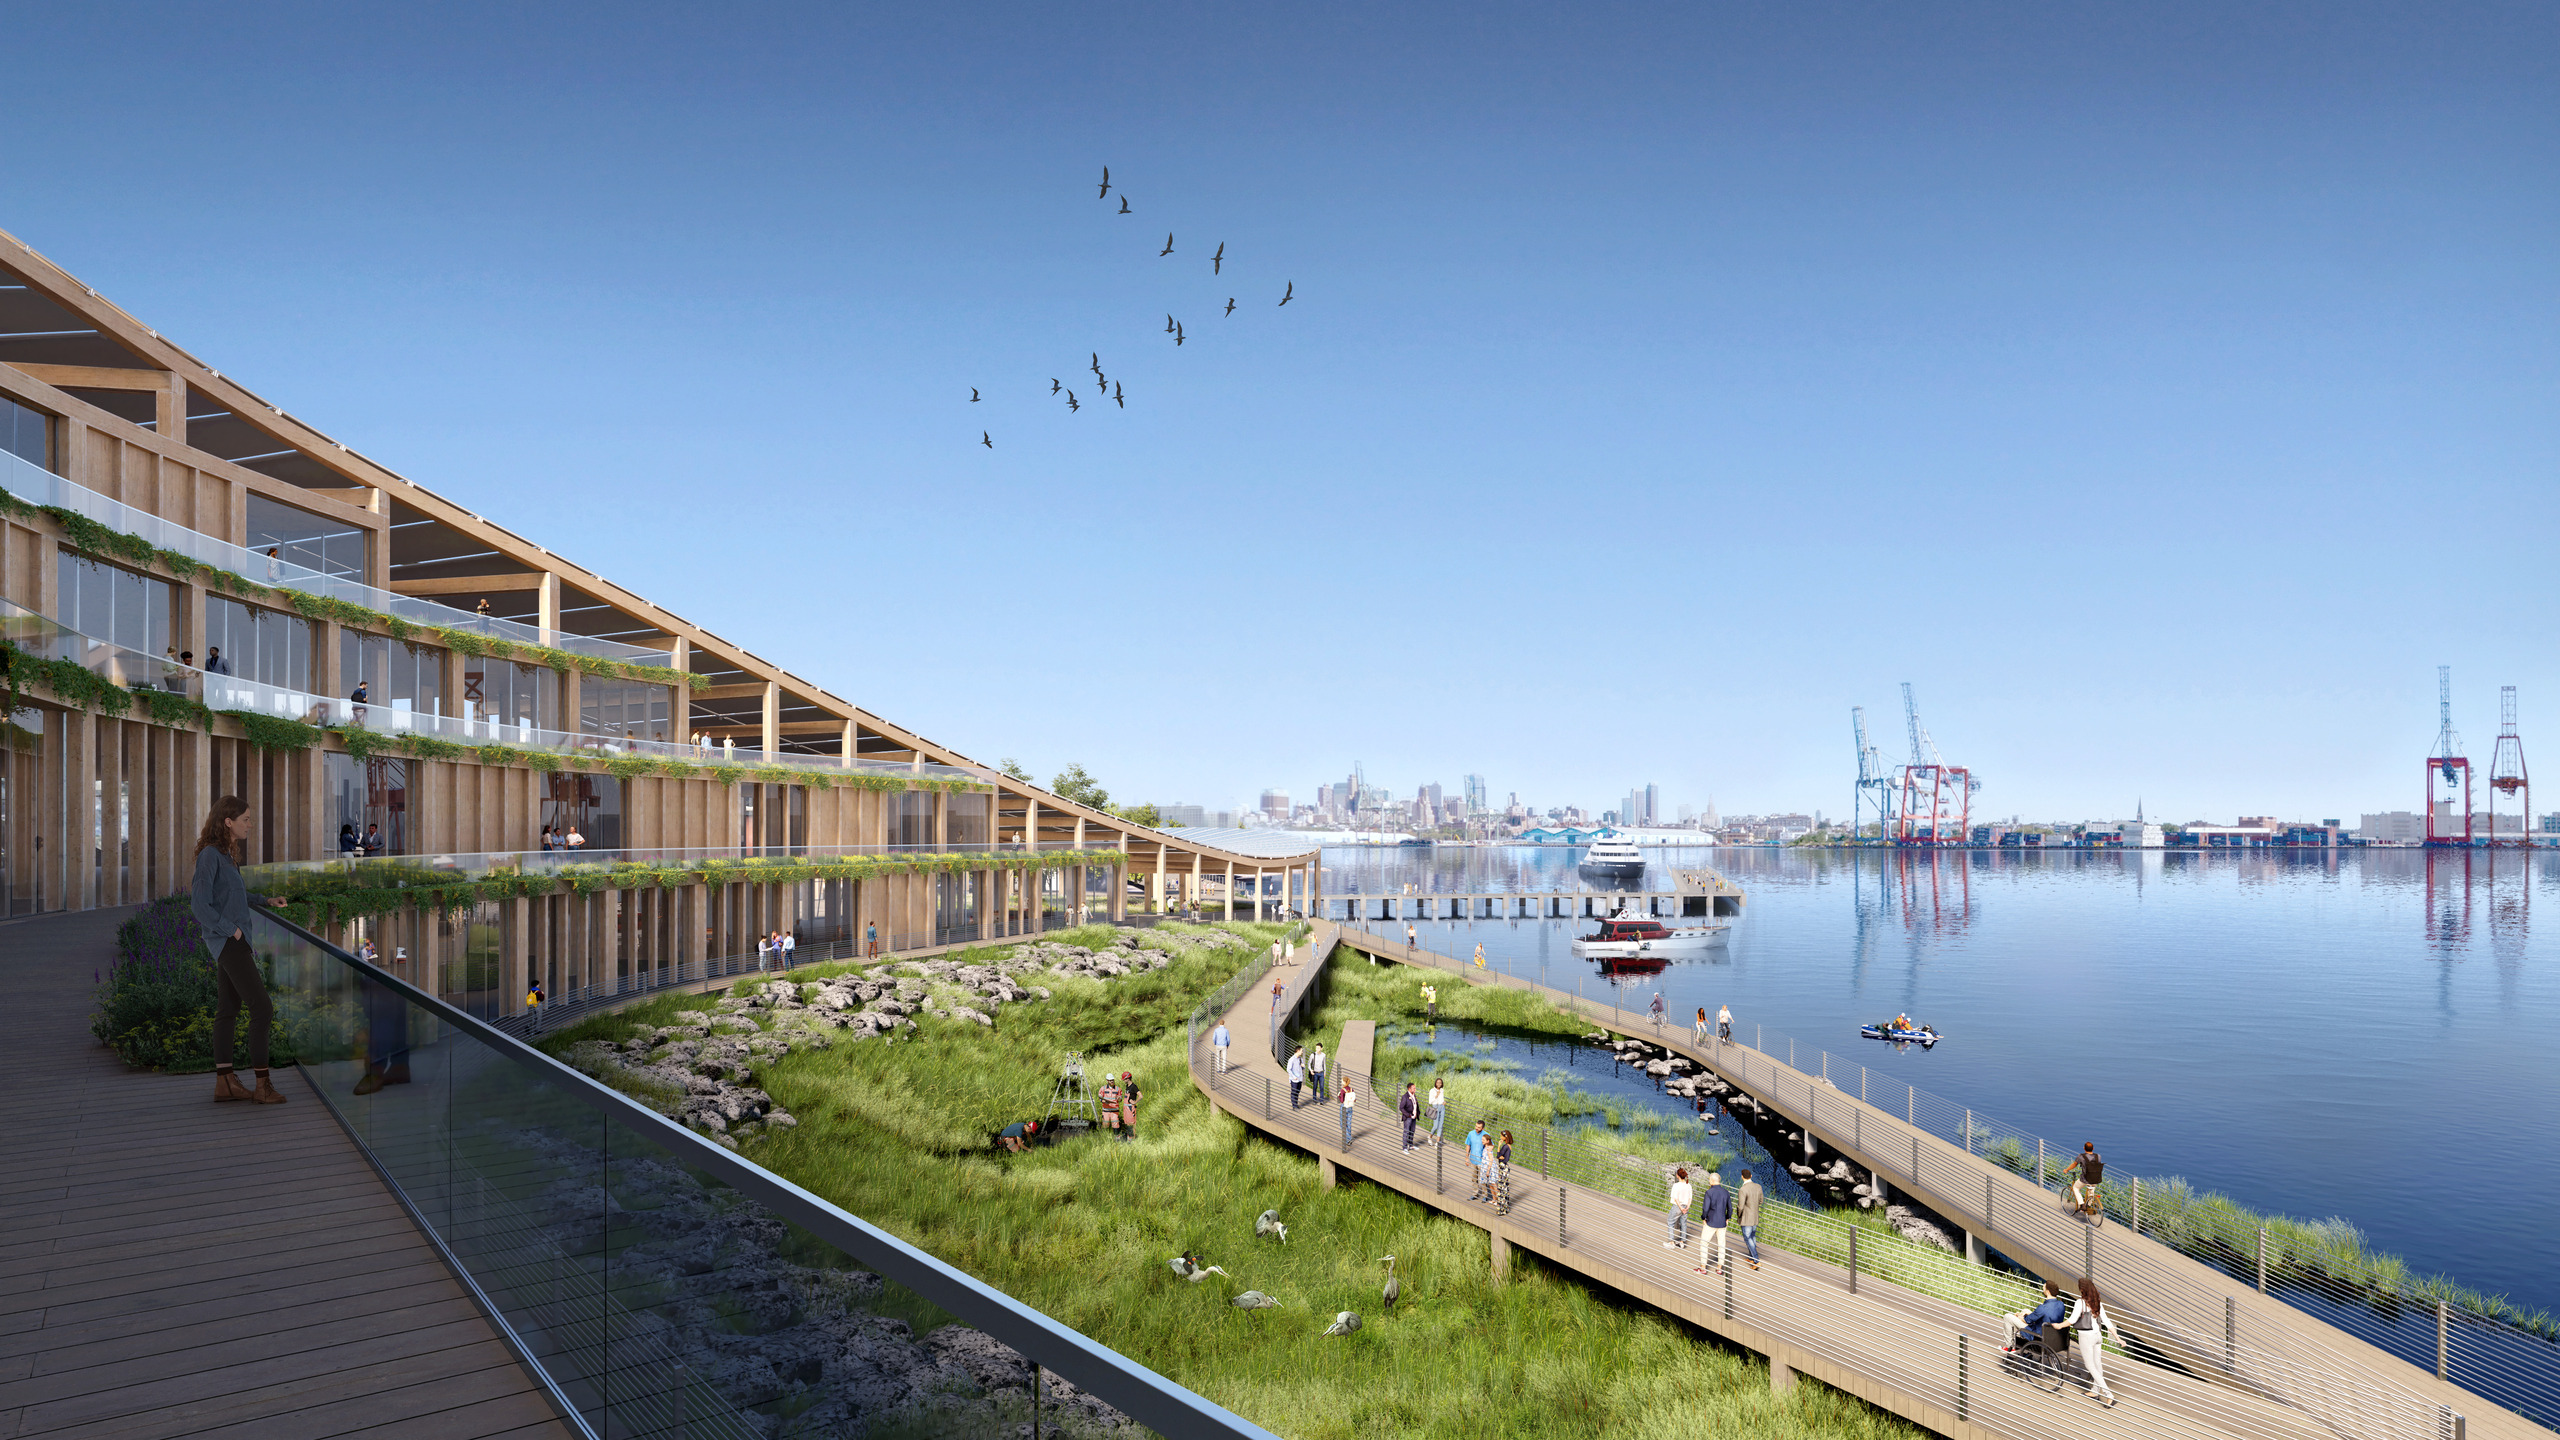 作為生態復育實驗園地的水岸溼地，同時也規劃有親水步道，讓民眾能來此散步賞景。(© SOM | Brick Visual)